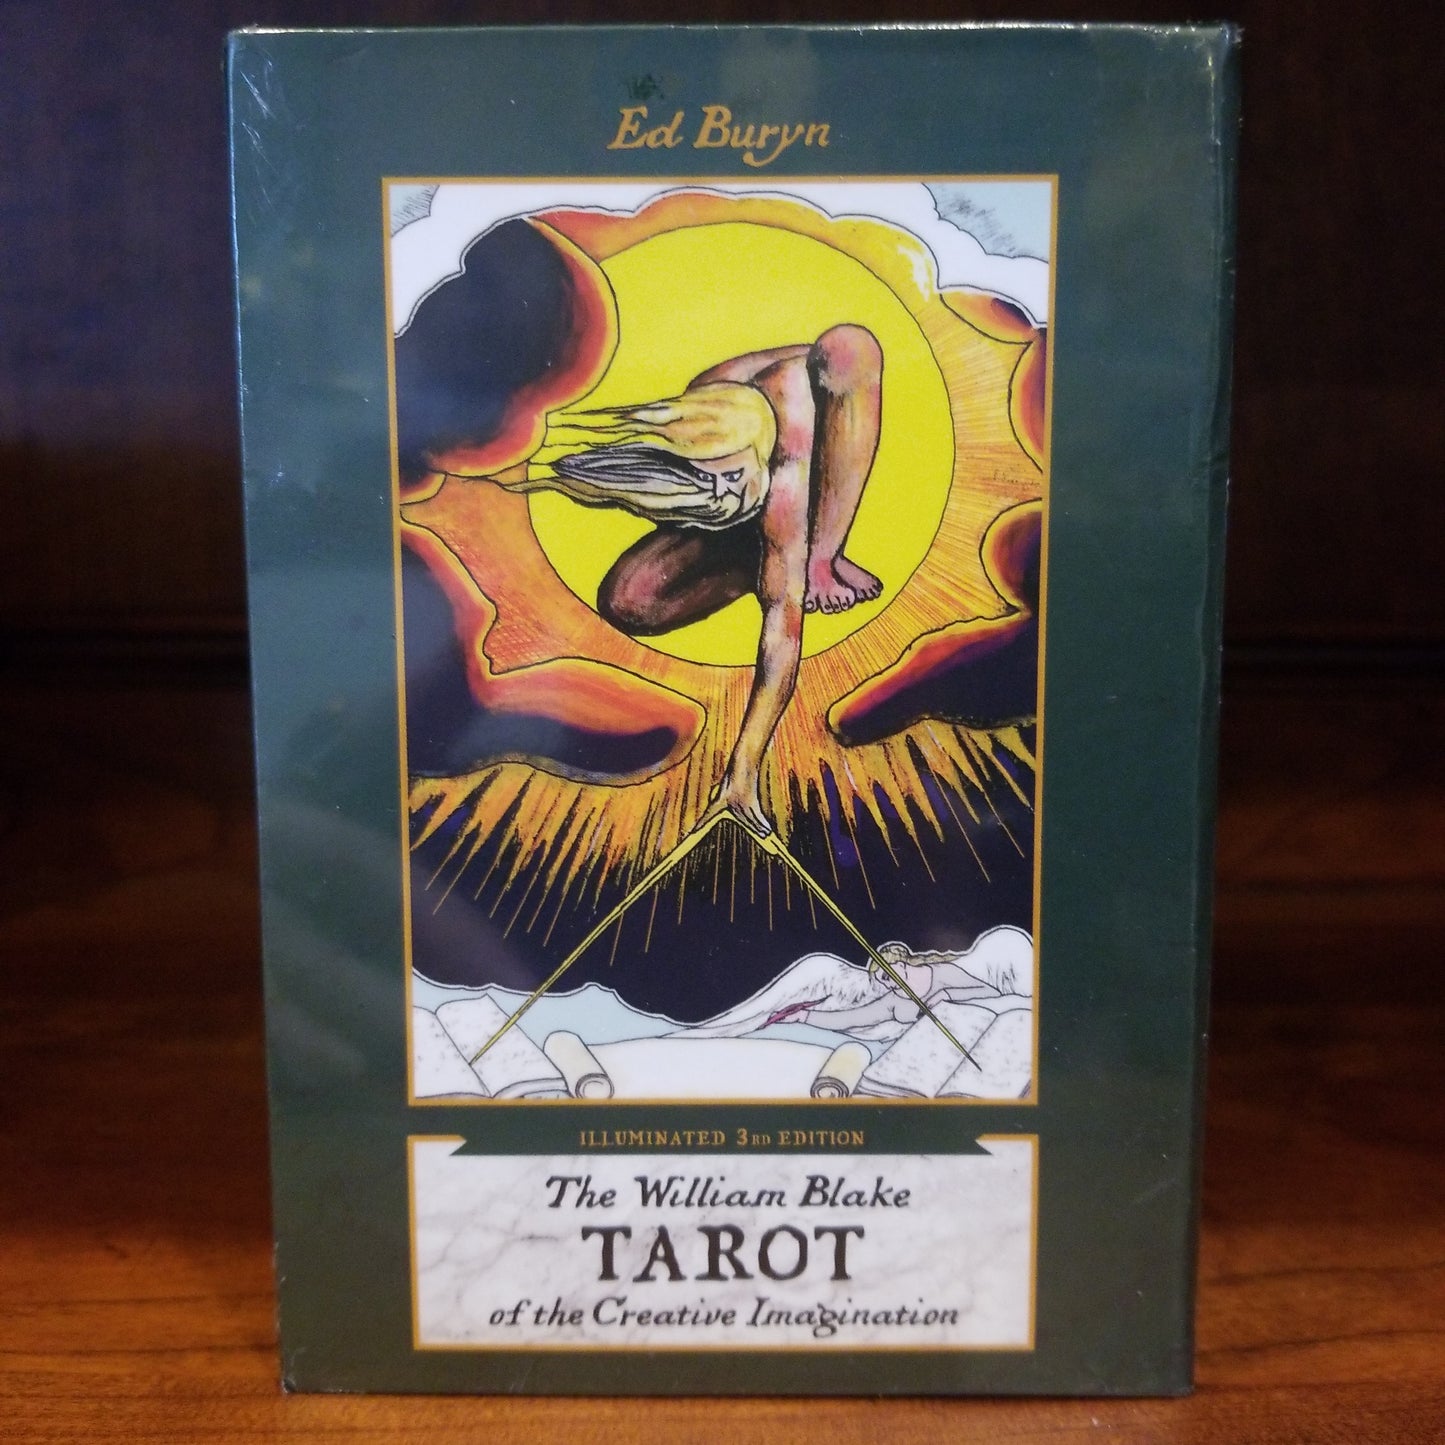 The William Blake Tarot